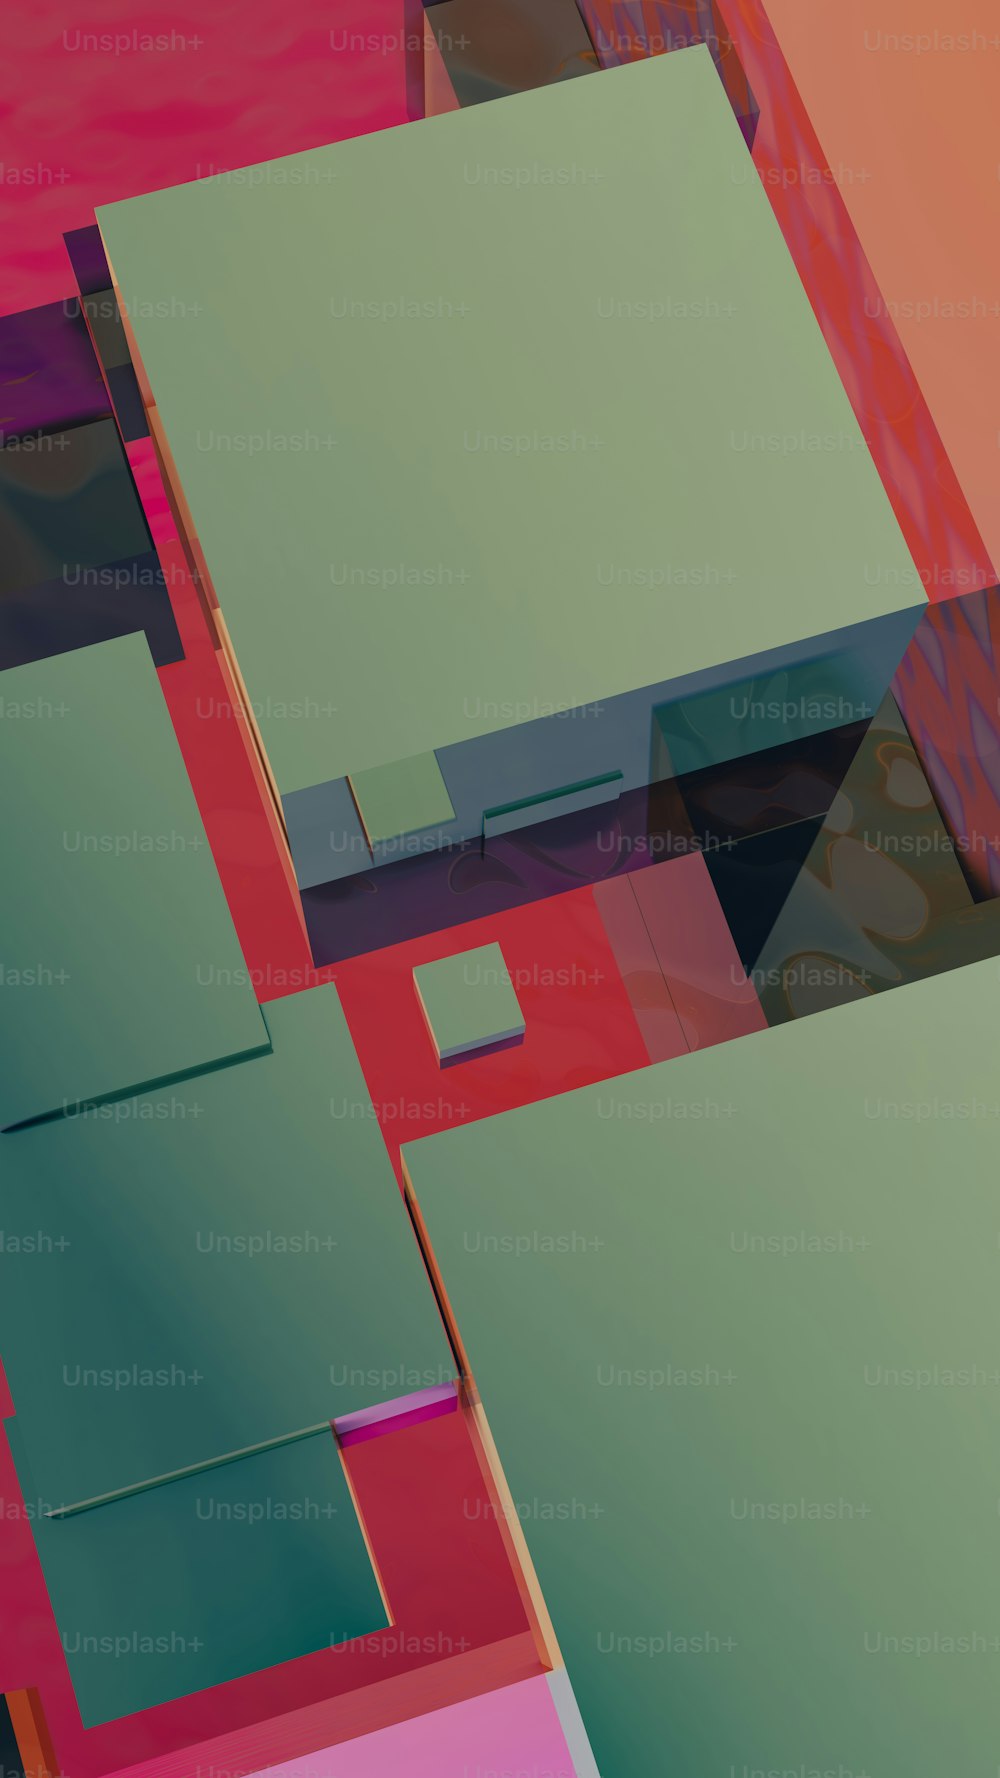 Una imagen abstracta de un grupo de cuadrados y rectángulos